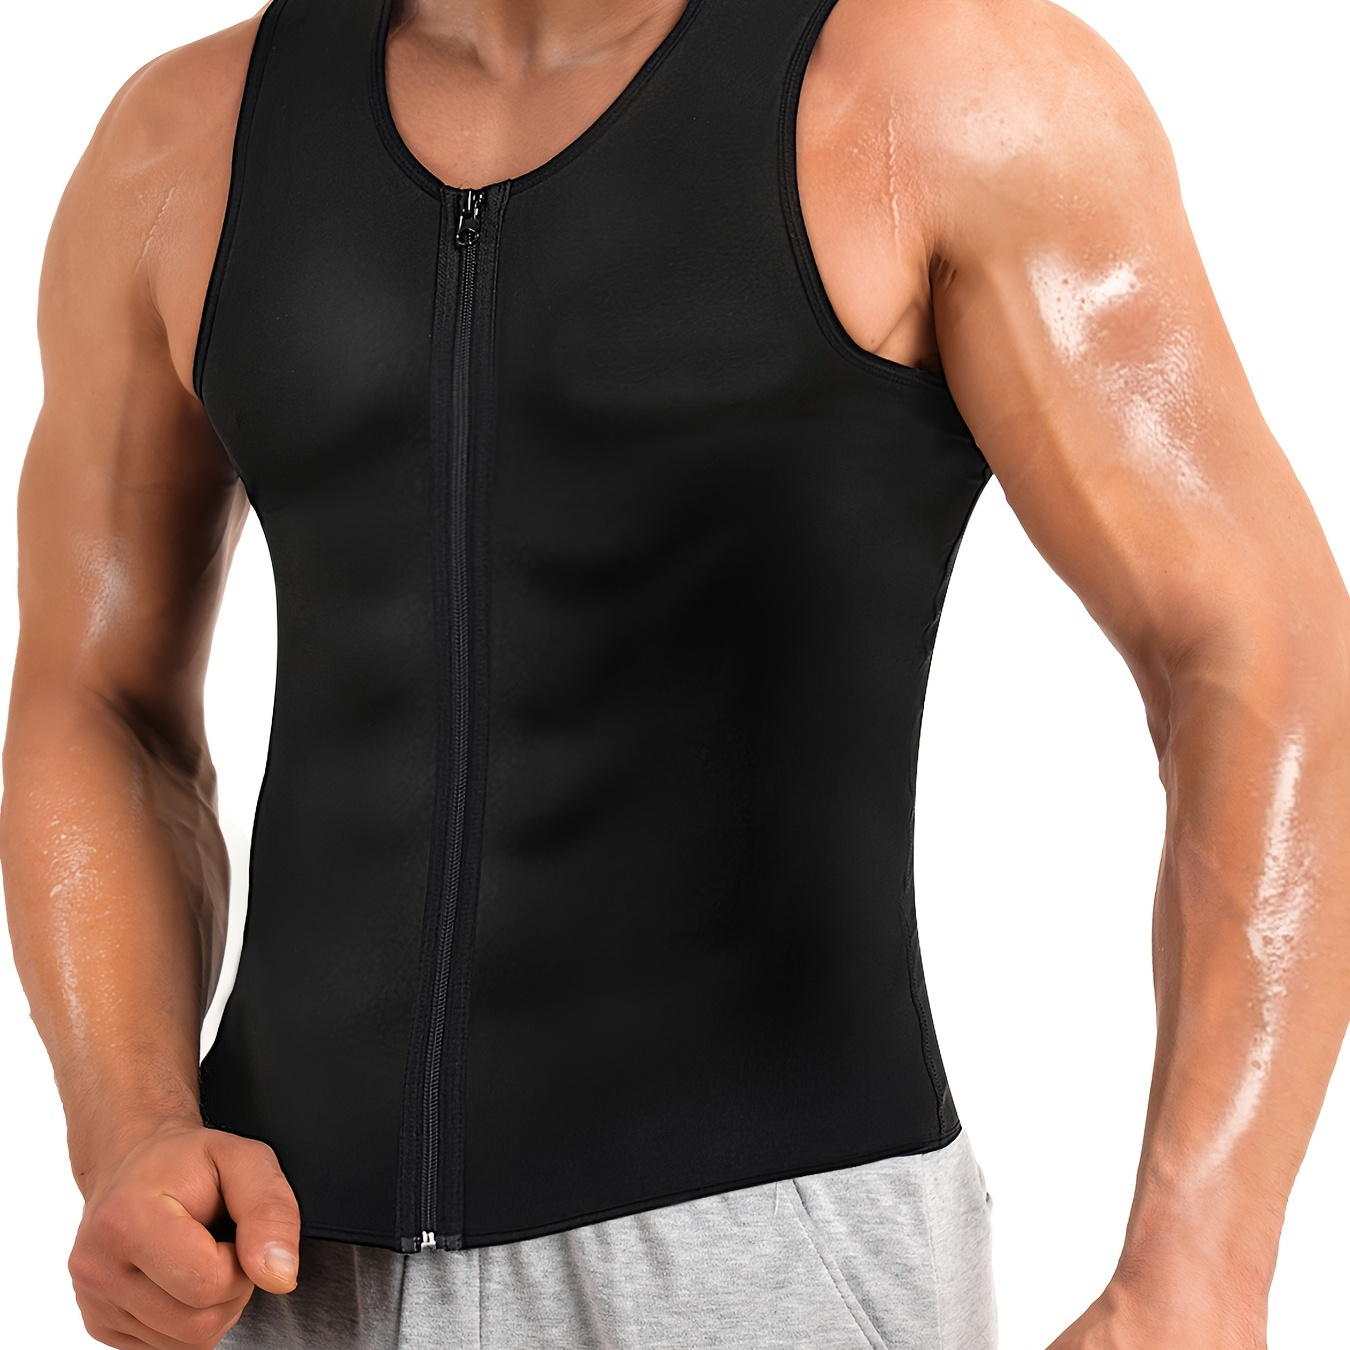  LIYUN Men Sauna Vest Body Shape Waist Trainer with